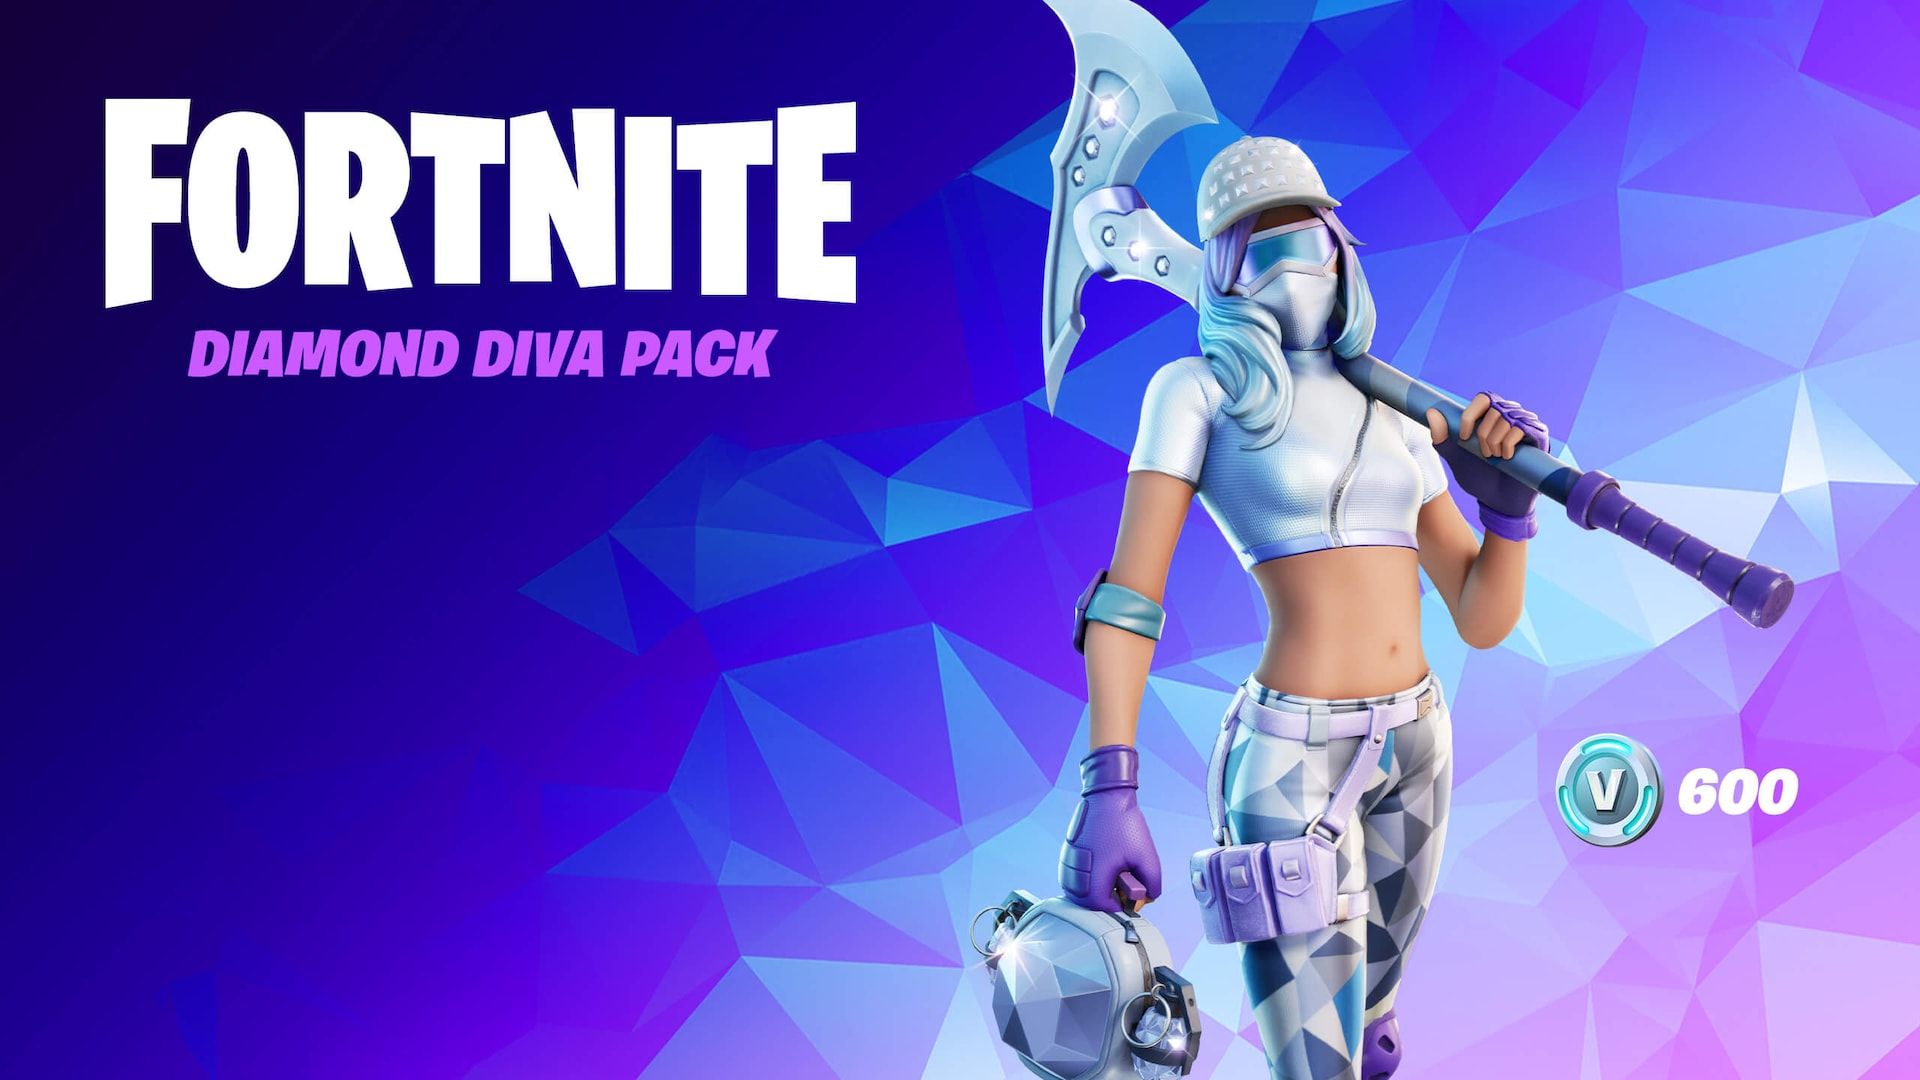 Fortnite Diamond Diva Pack